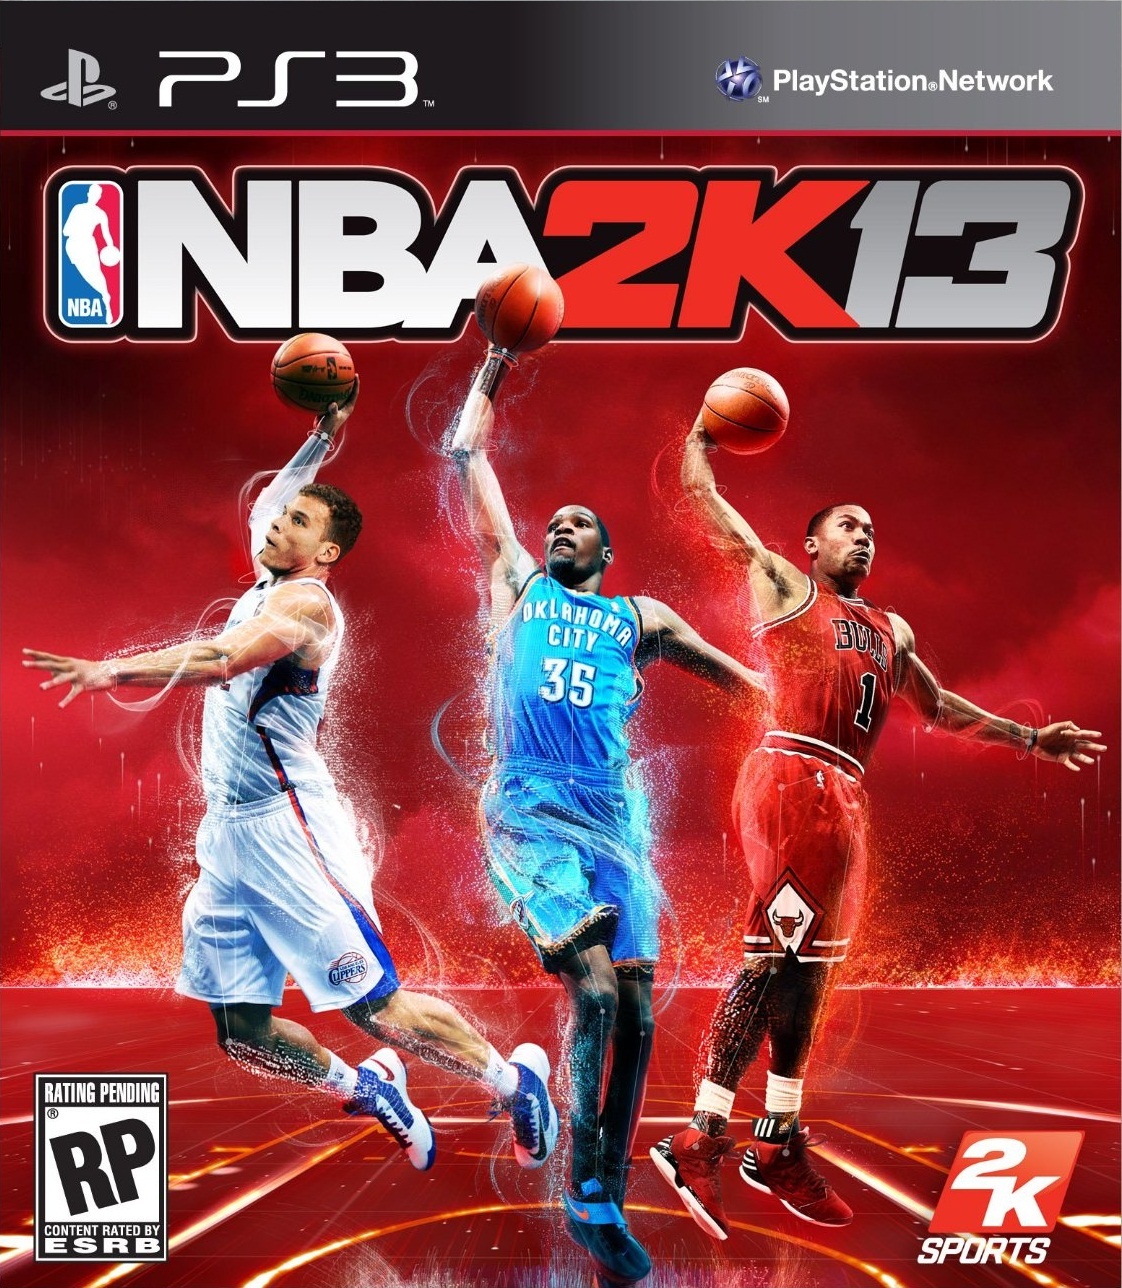 PS3 - NBA 2K13